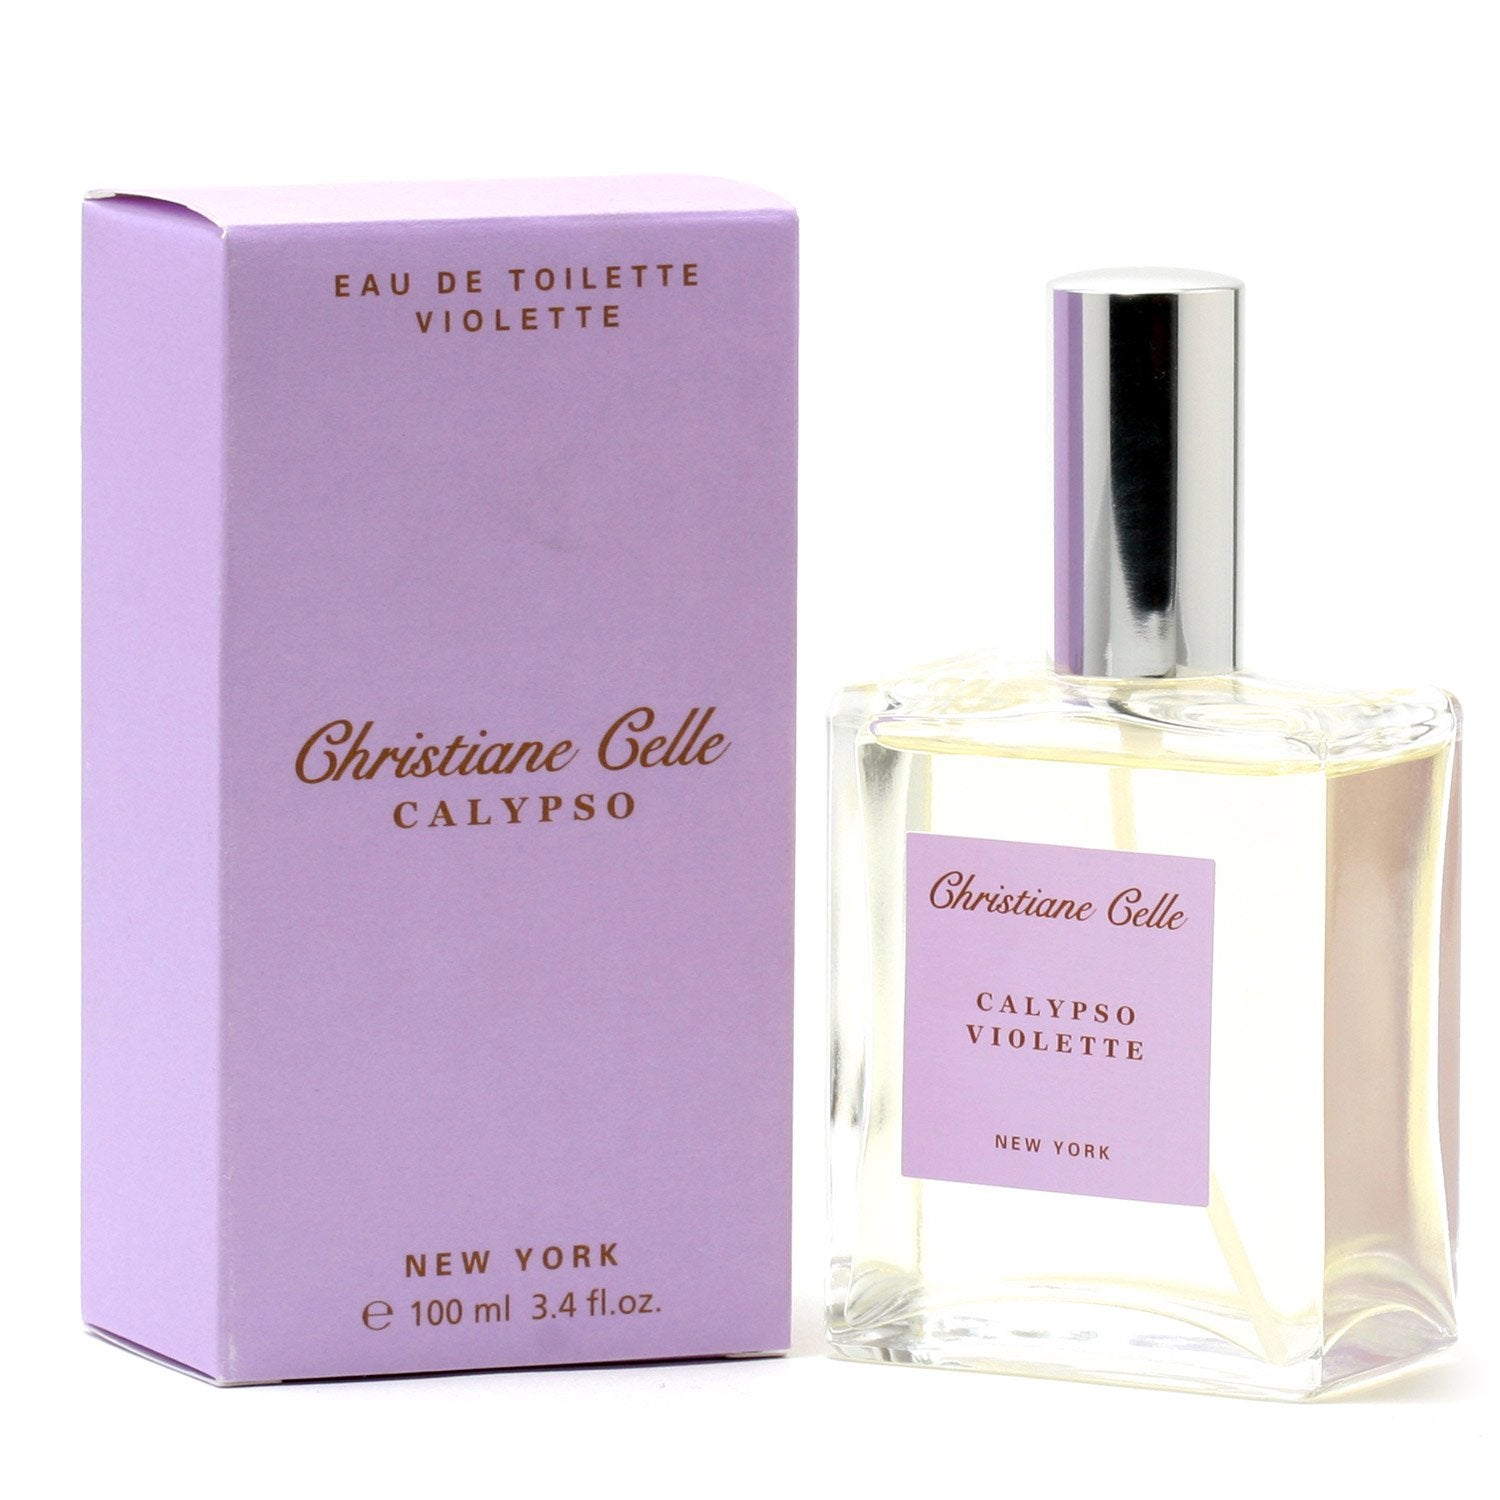 Perfume - CALYPSO VIOLETTE FOR WOMEN BY CHRISTIANE CELLE - EAU DE TOILETTE SPRAY, 3.4 OZ